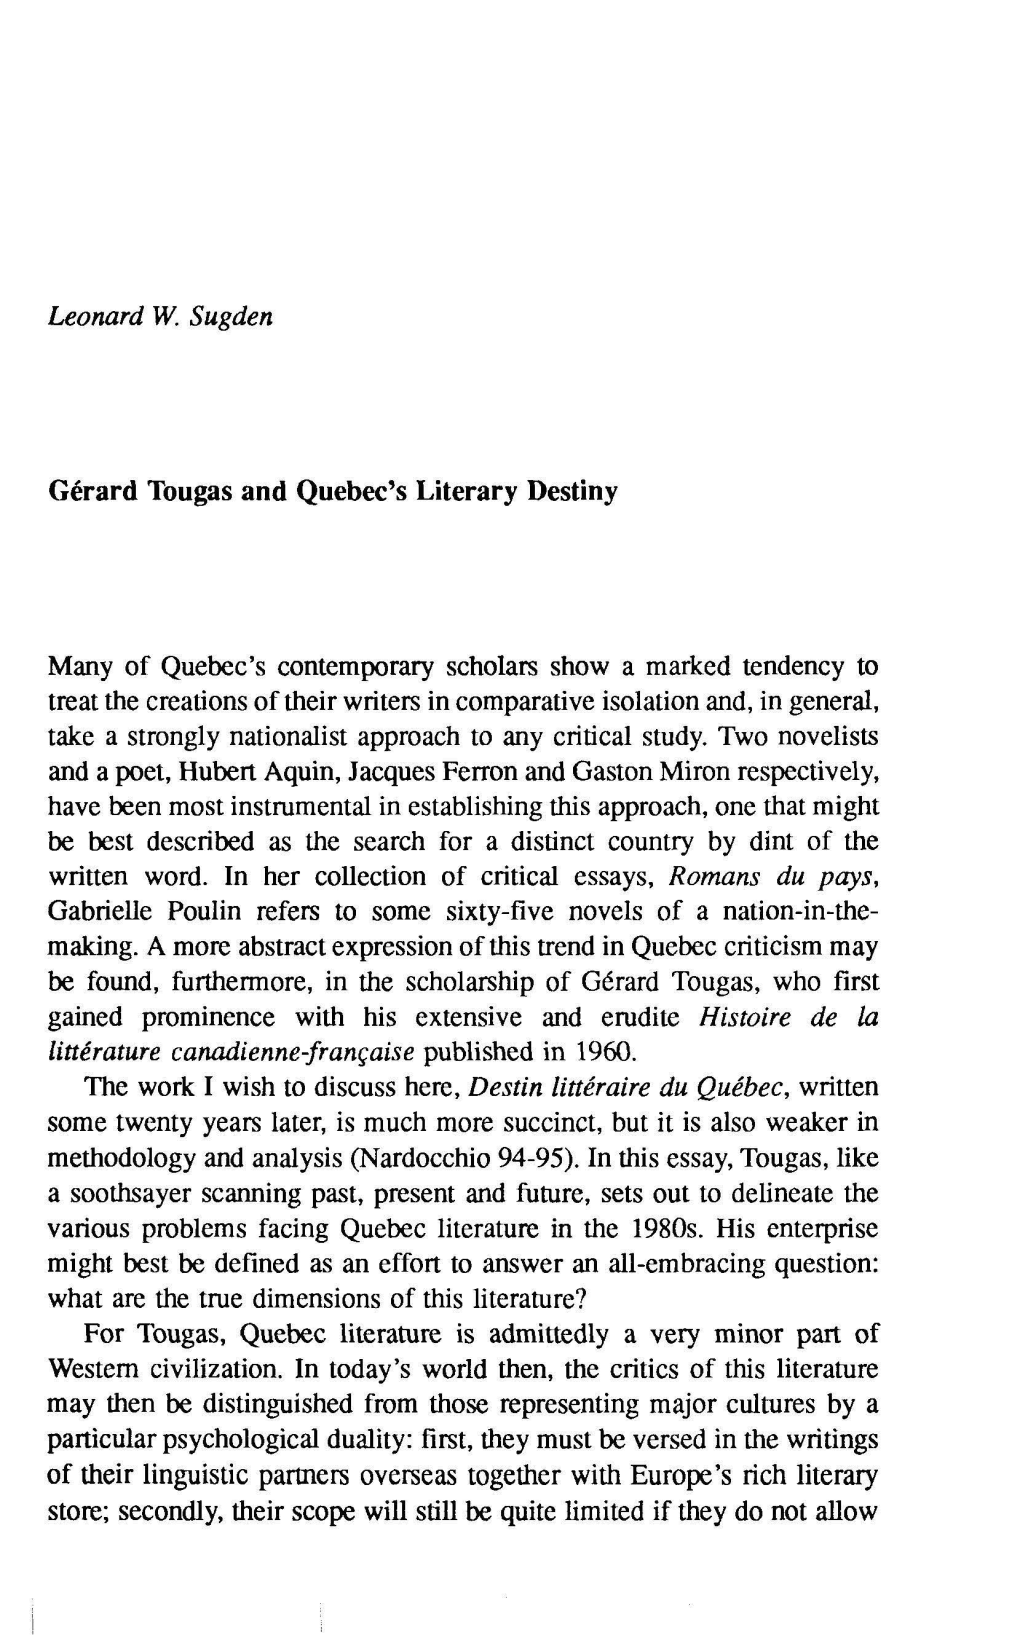 Gerard Tougas and Quebec's Literary Destiny